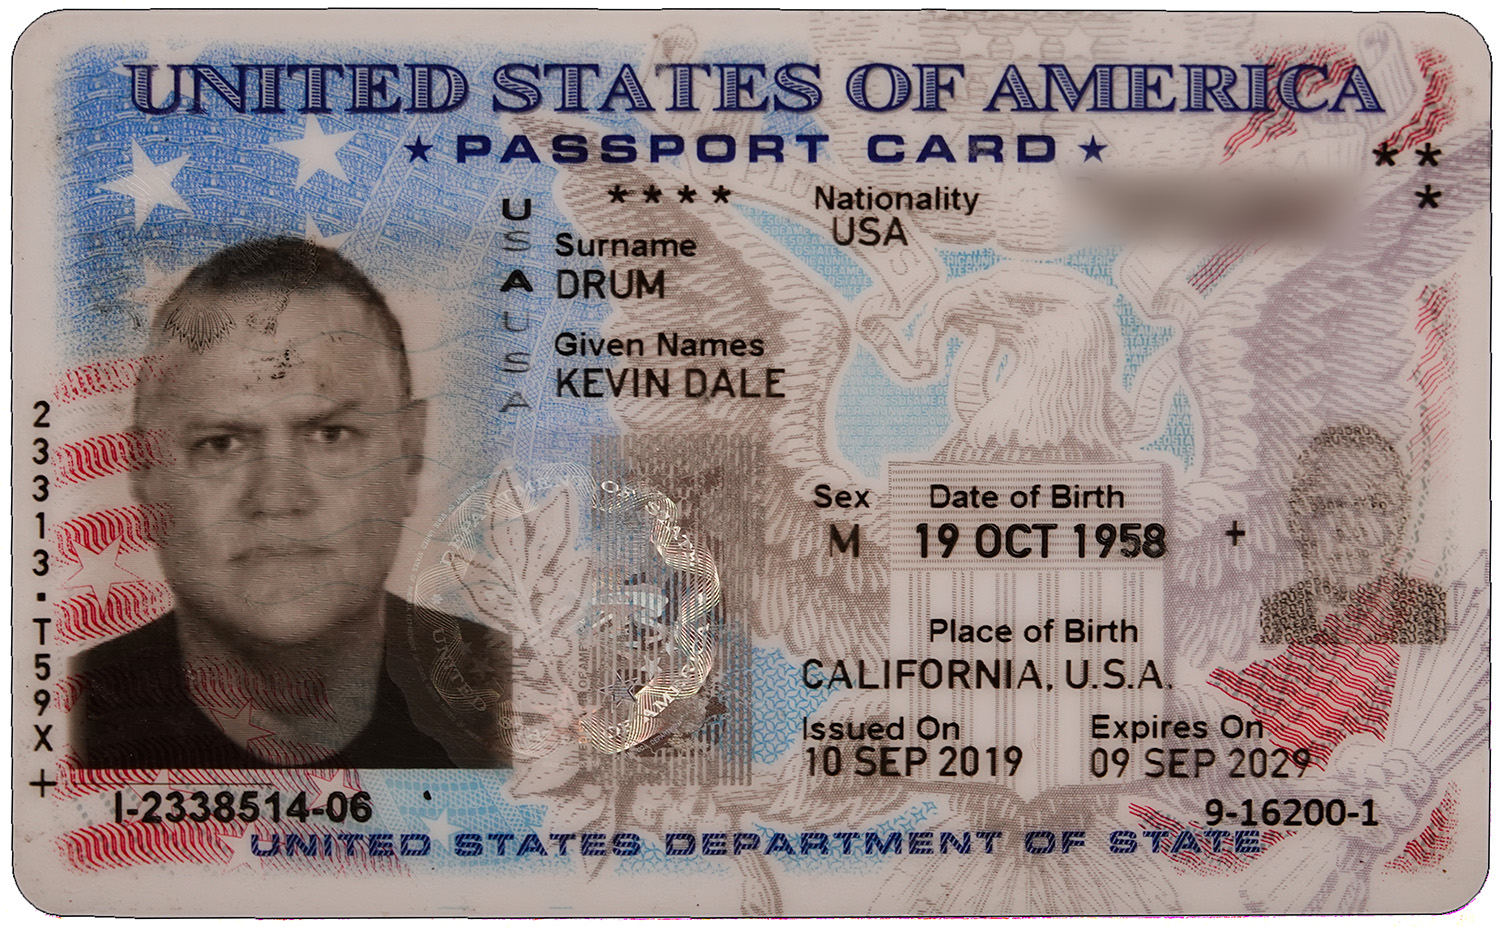 passport card